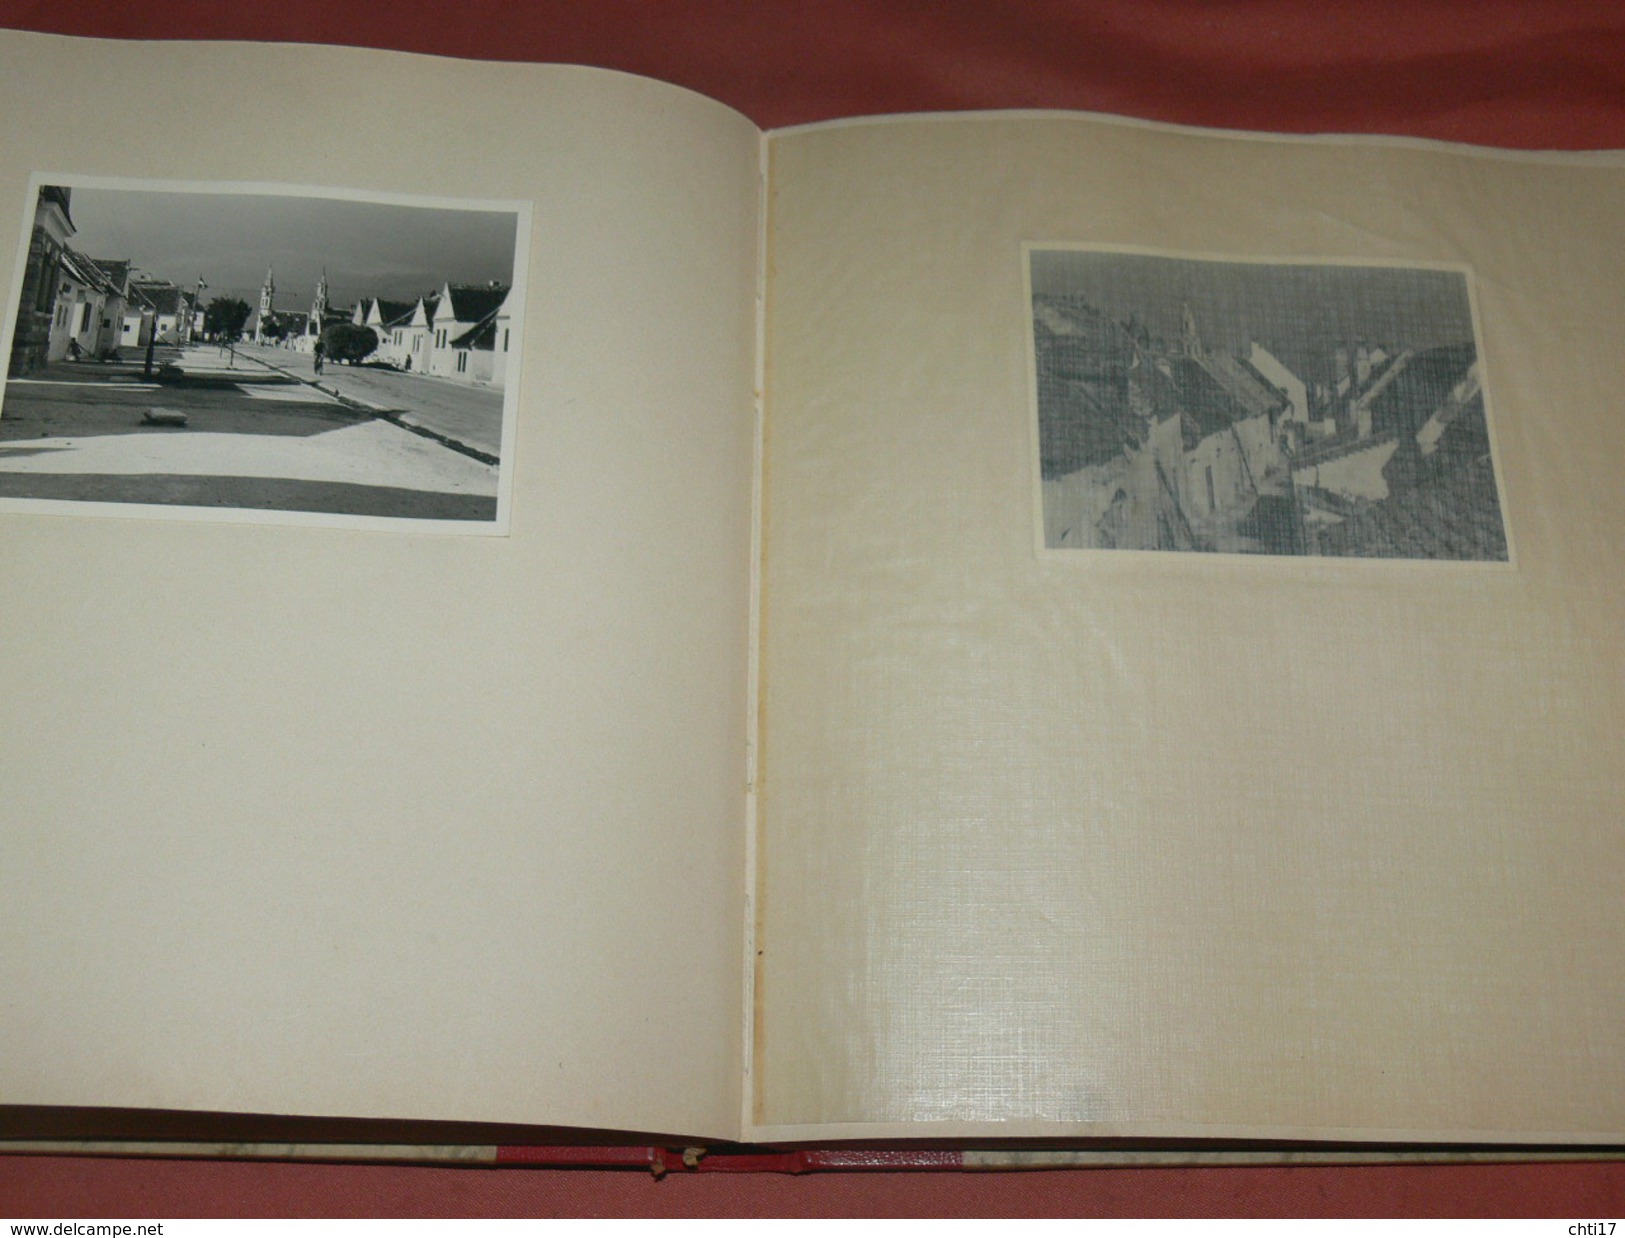 ALBUM PHOTOS MORBISCH  1939 / NEUSIEDLERSEE  VIENNE  / MILITARIA III REICH / SOLDAT LUFTWAFFE / CANON FLACK 75 / DCA /